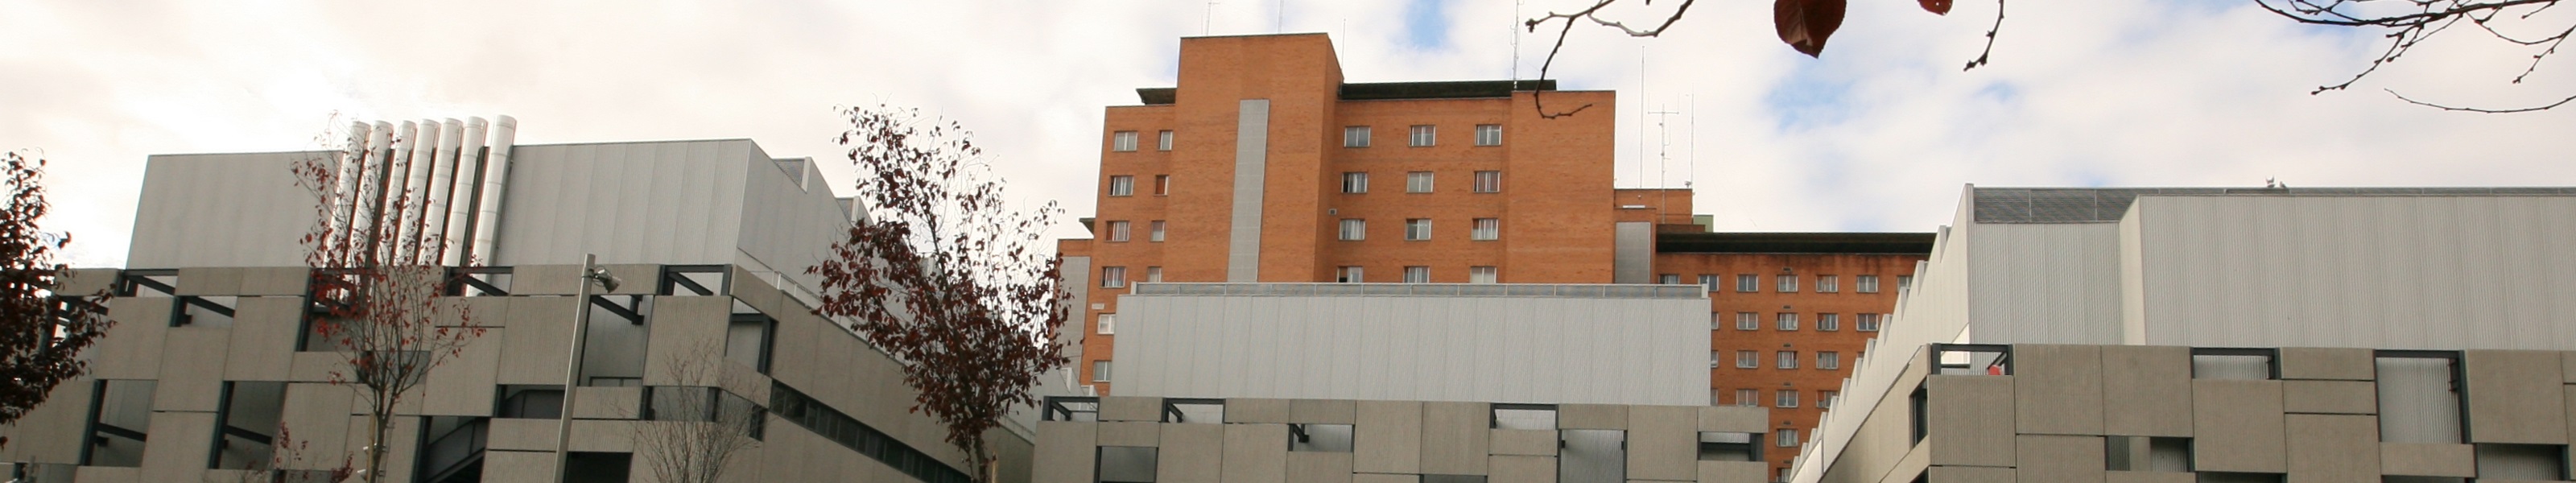 Hospital Clínico Universitario de Valladolid 2